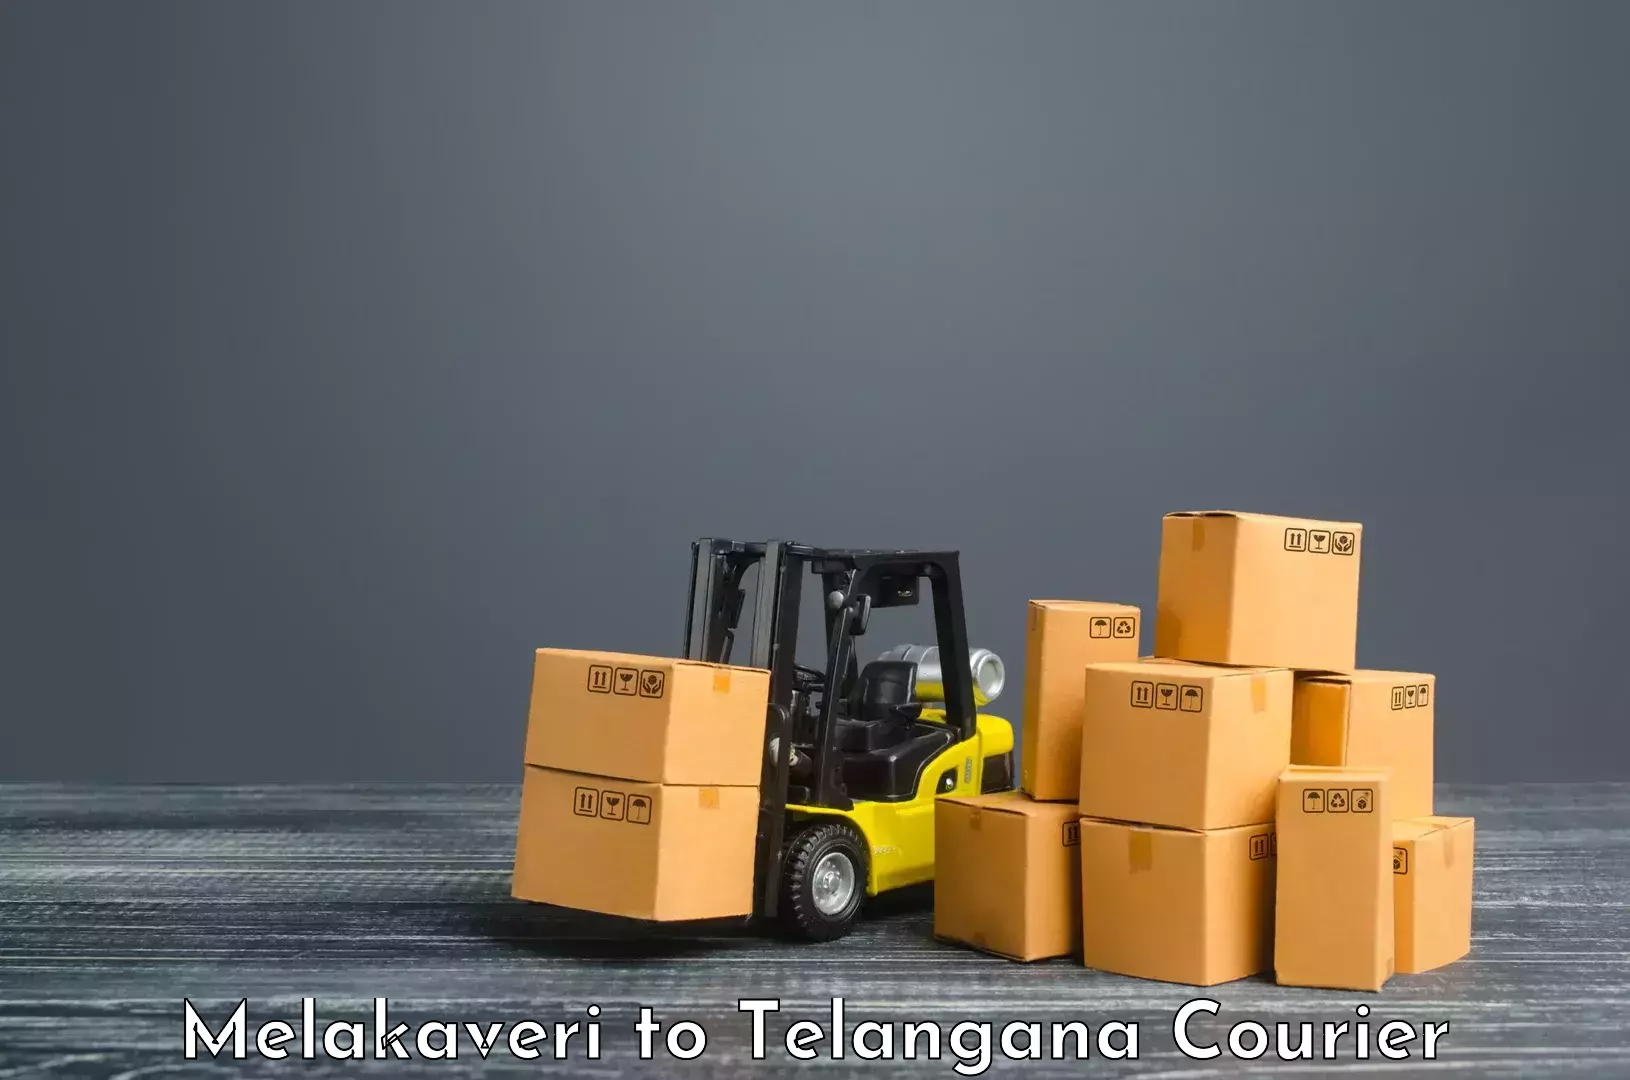 On-call courier service Melakaveri to Kothagudem